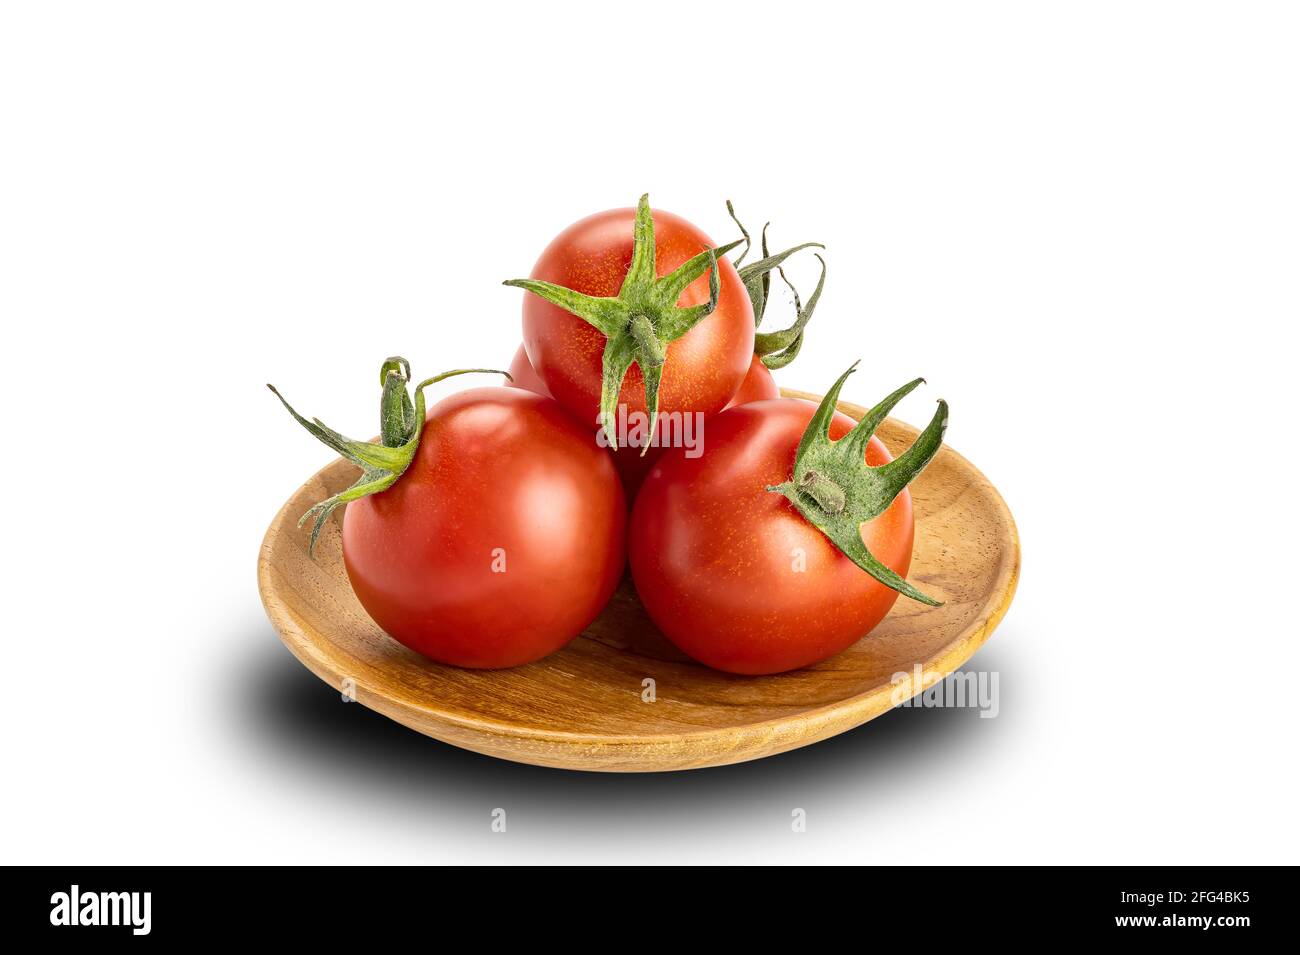 Pile de tomates cerises mûres dans une assiette en bois sur fond blanc. Les tomates ou Solanum lycopersicum ou lycopersicon esculentum sont la source de l'antiox Banque D'Images